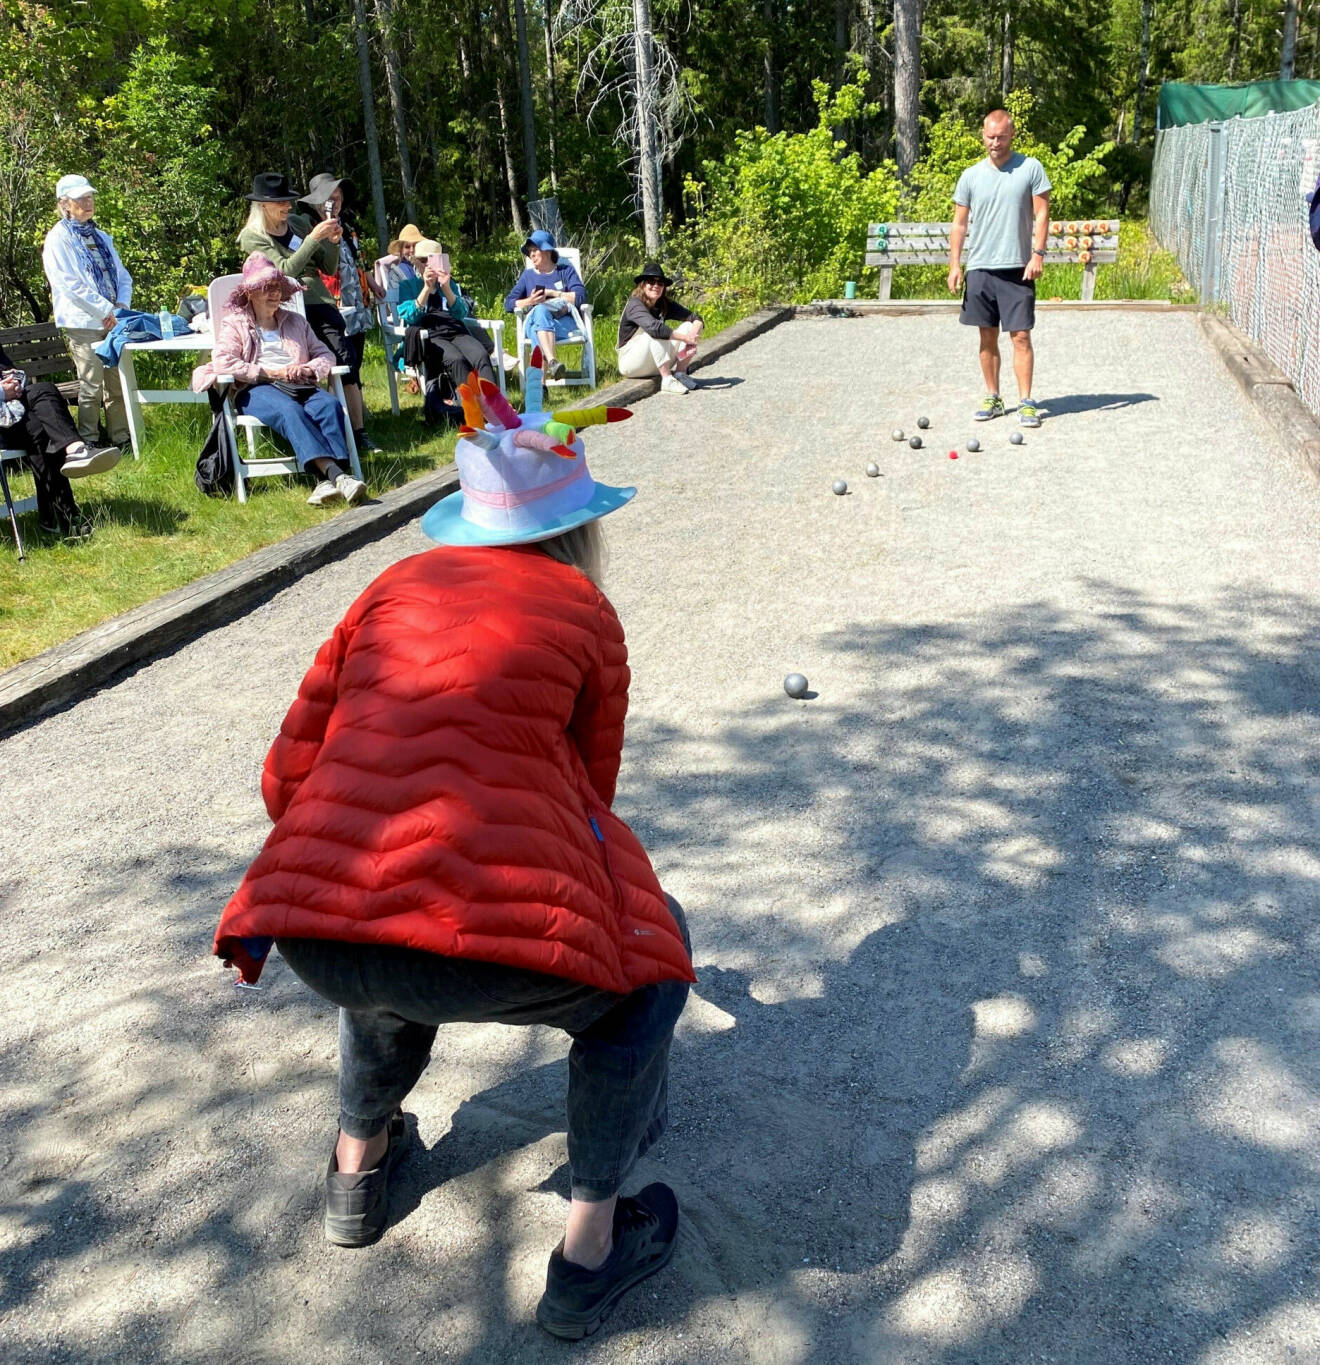 Kvinna med hatt och röd jacka spelar boule på grusplan med man i shorts och t-shirt. Personer, också med hattar, sitter i solstolar intill och tittar på.